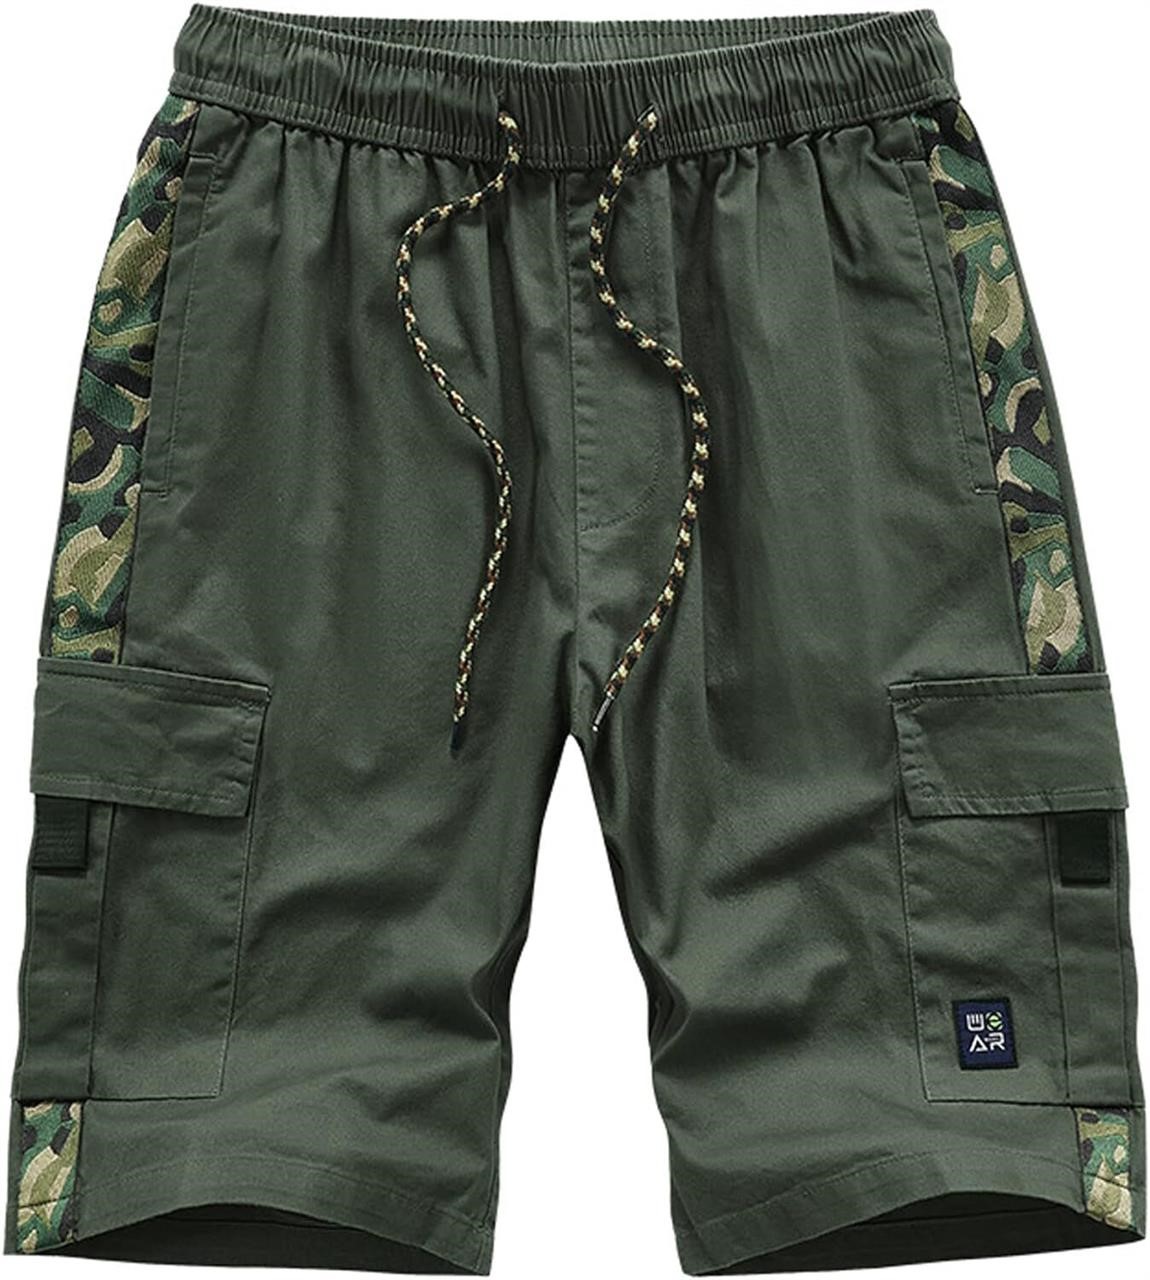 $26  VtuAOL Men's Cargo Shorts  34 Camo Green